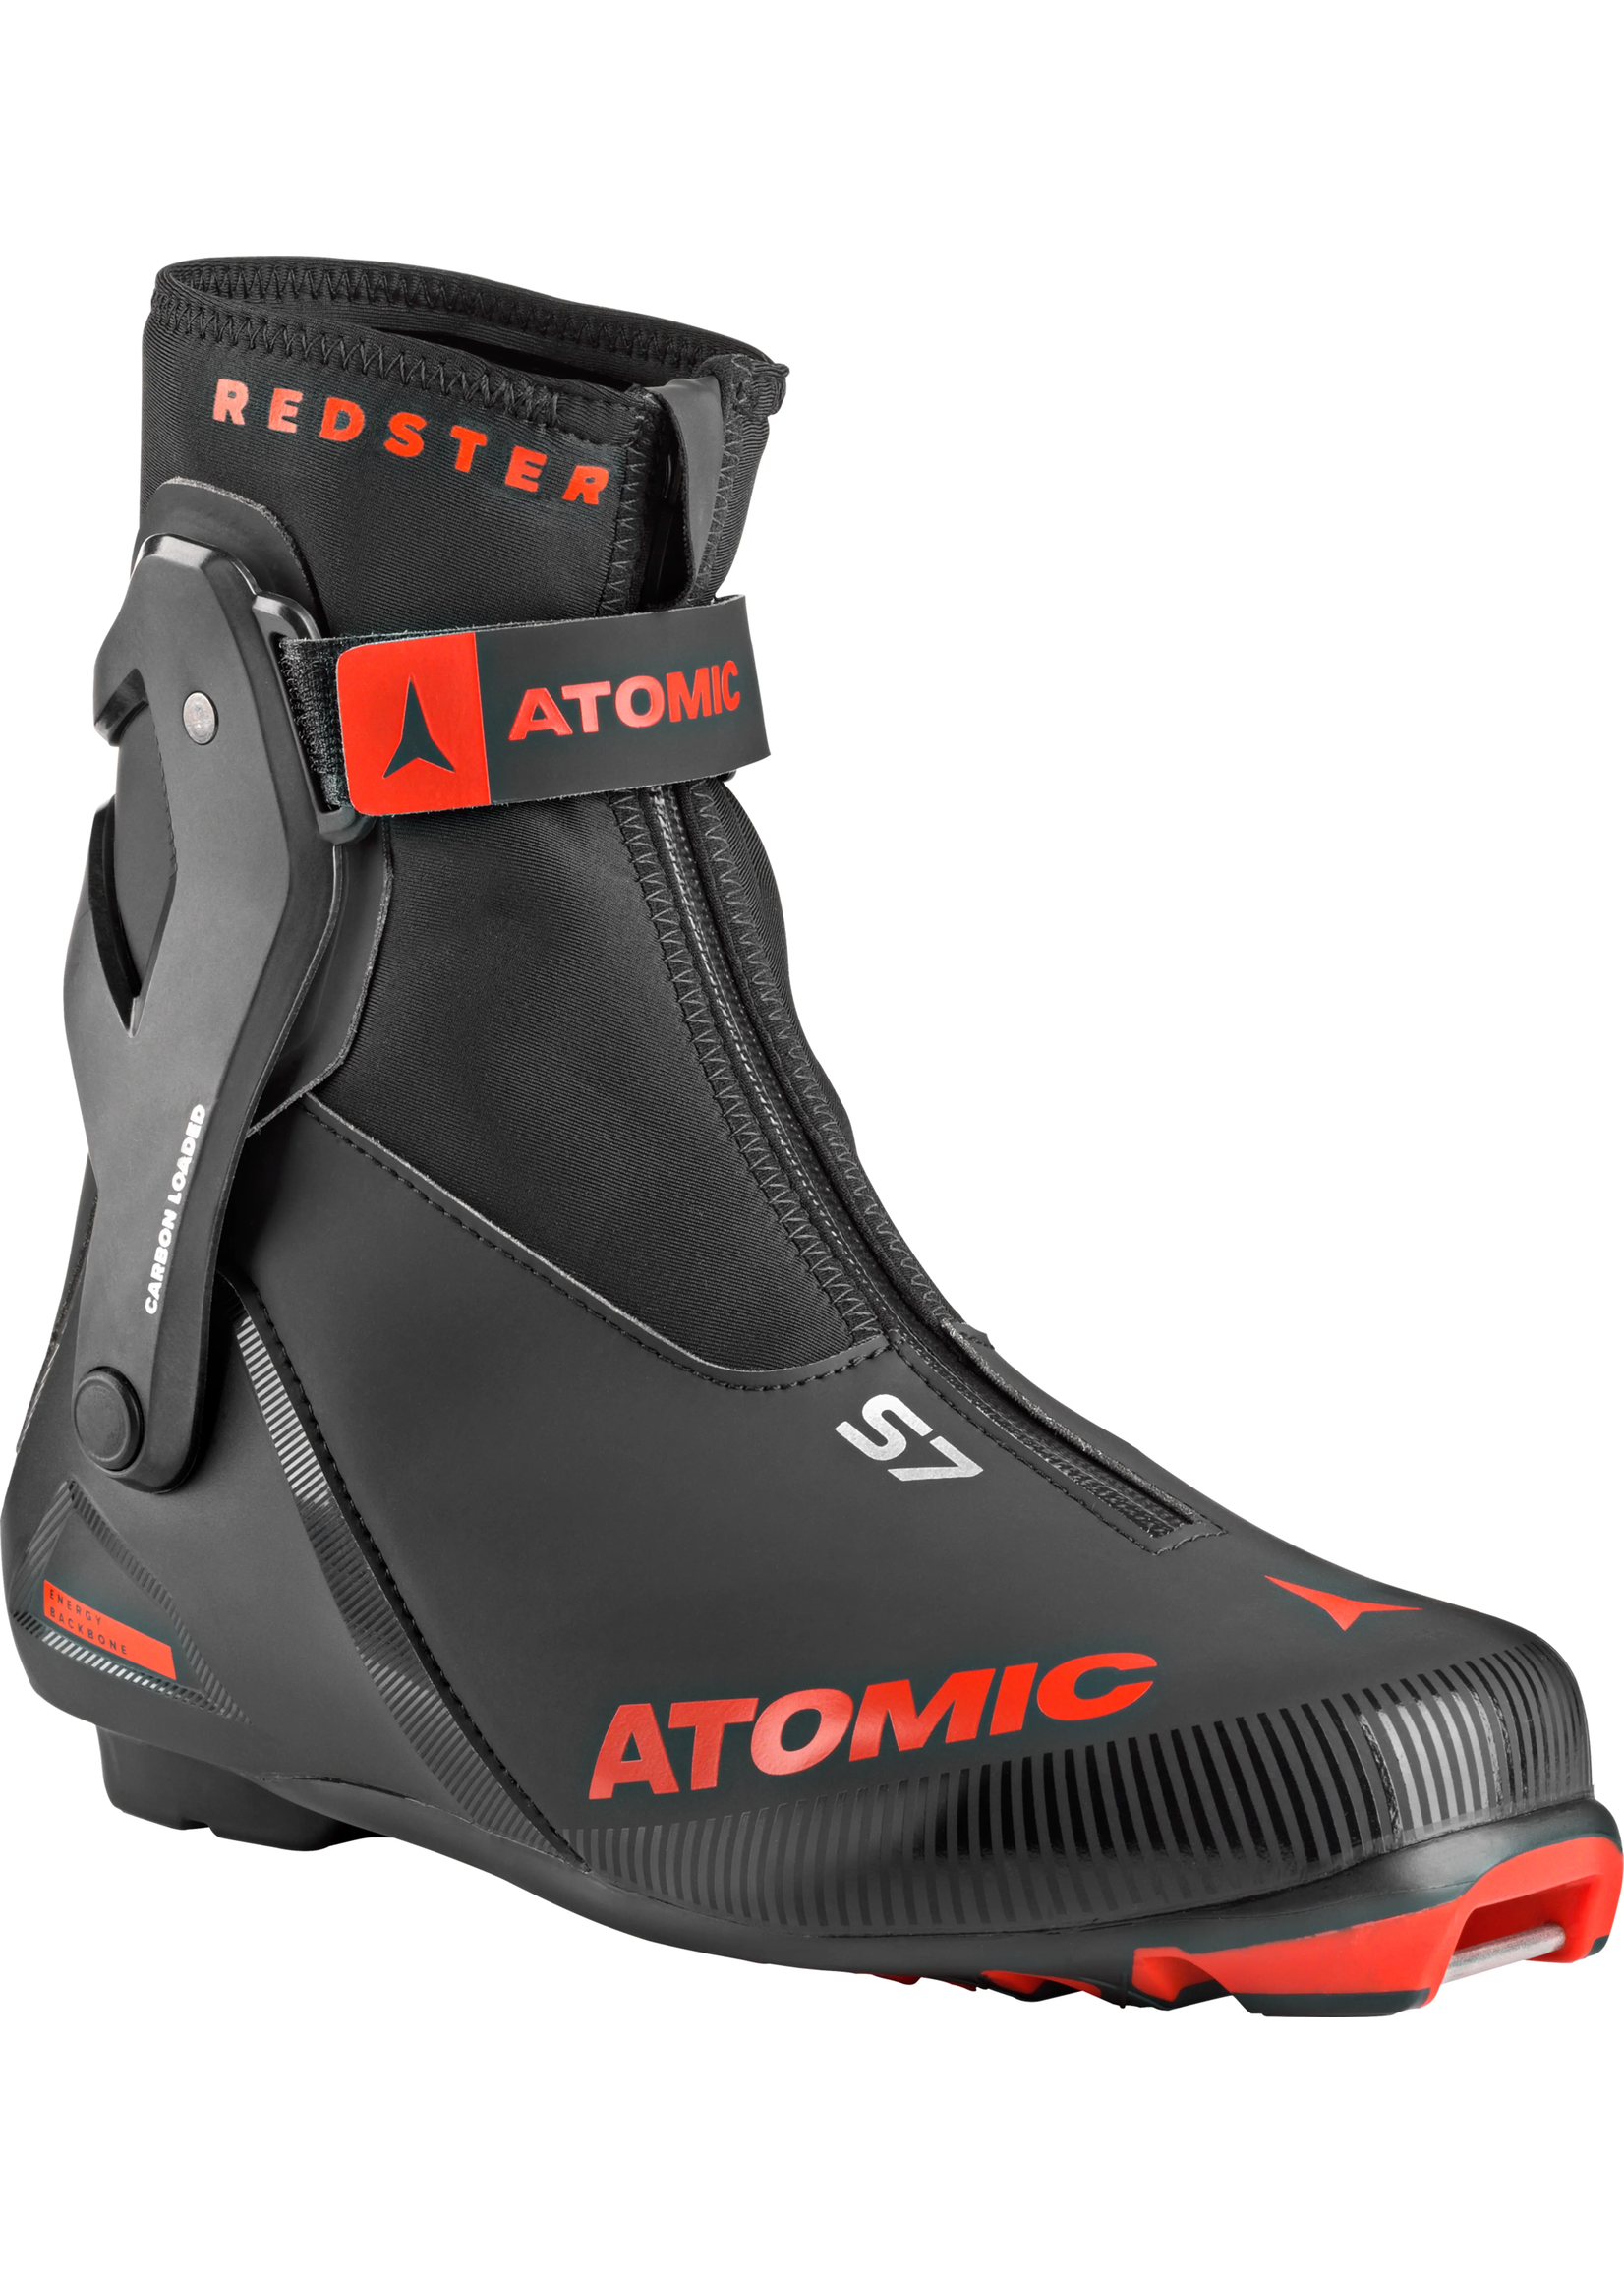 Atomic Atomic REDSTER S7 BLACK/Red